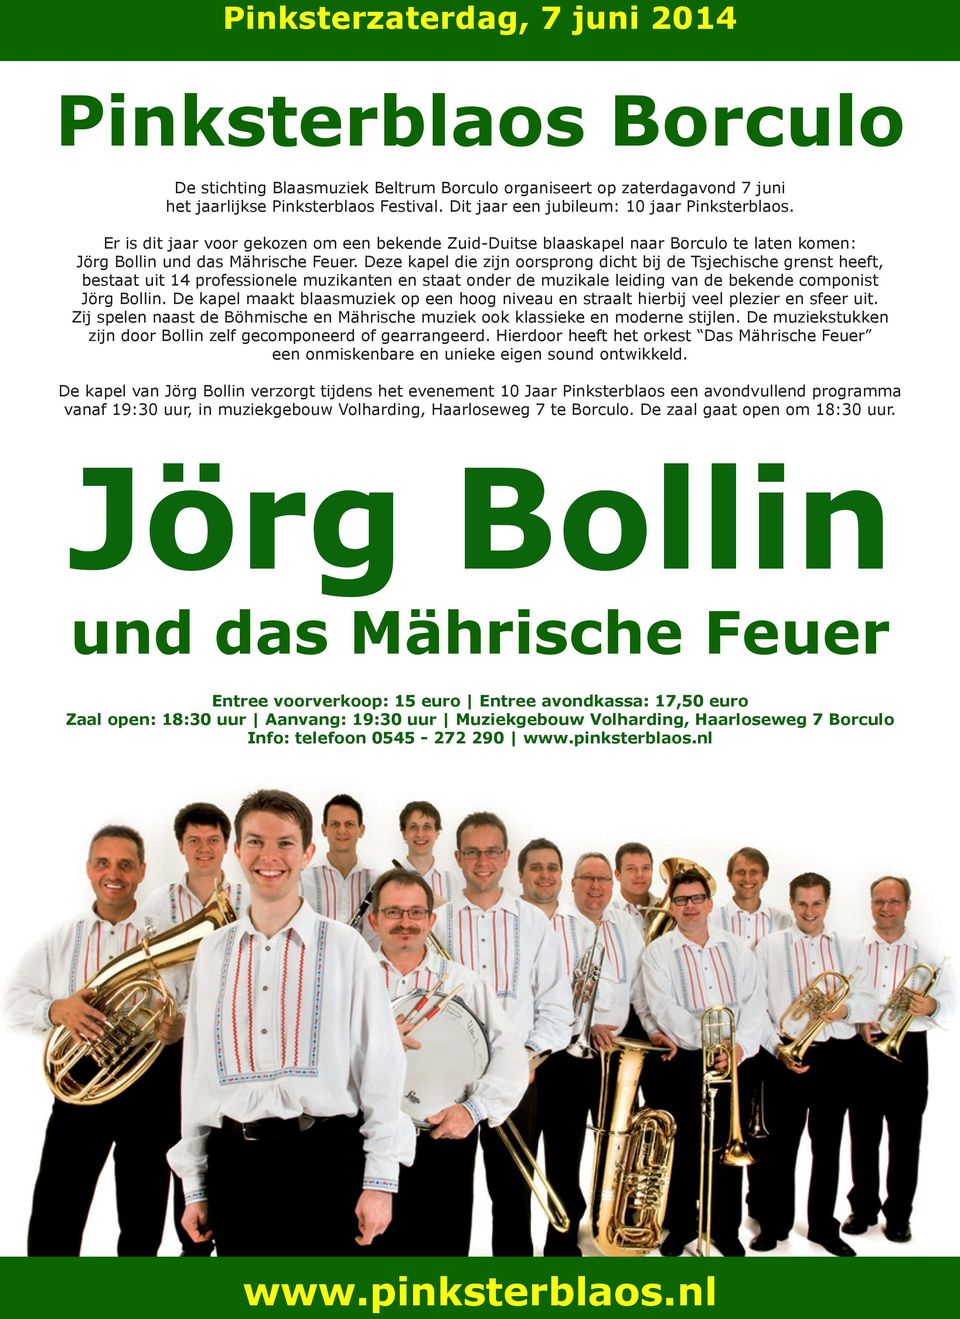 Deze kapel die zijn oorsprong dicht bij de Tsjechische grenst heeft, bestaat uit 14 professionele muzikanten en staat onder de muzikale leiding van de bekende componist Jörg Bollin.